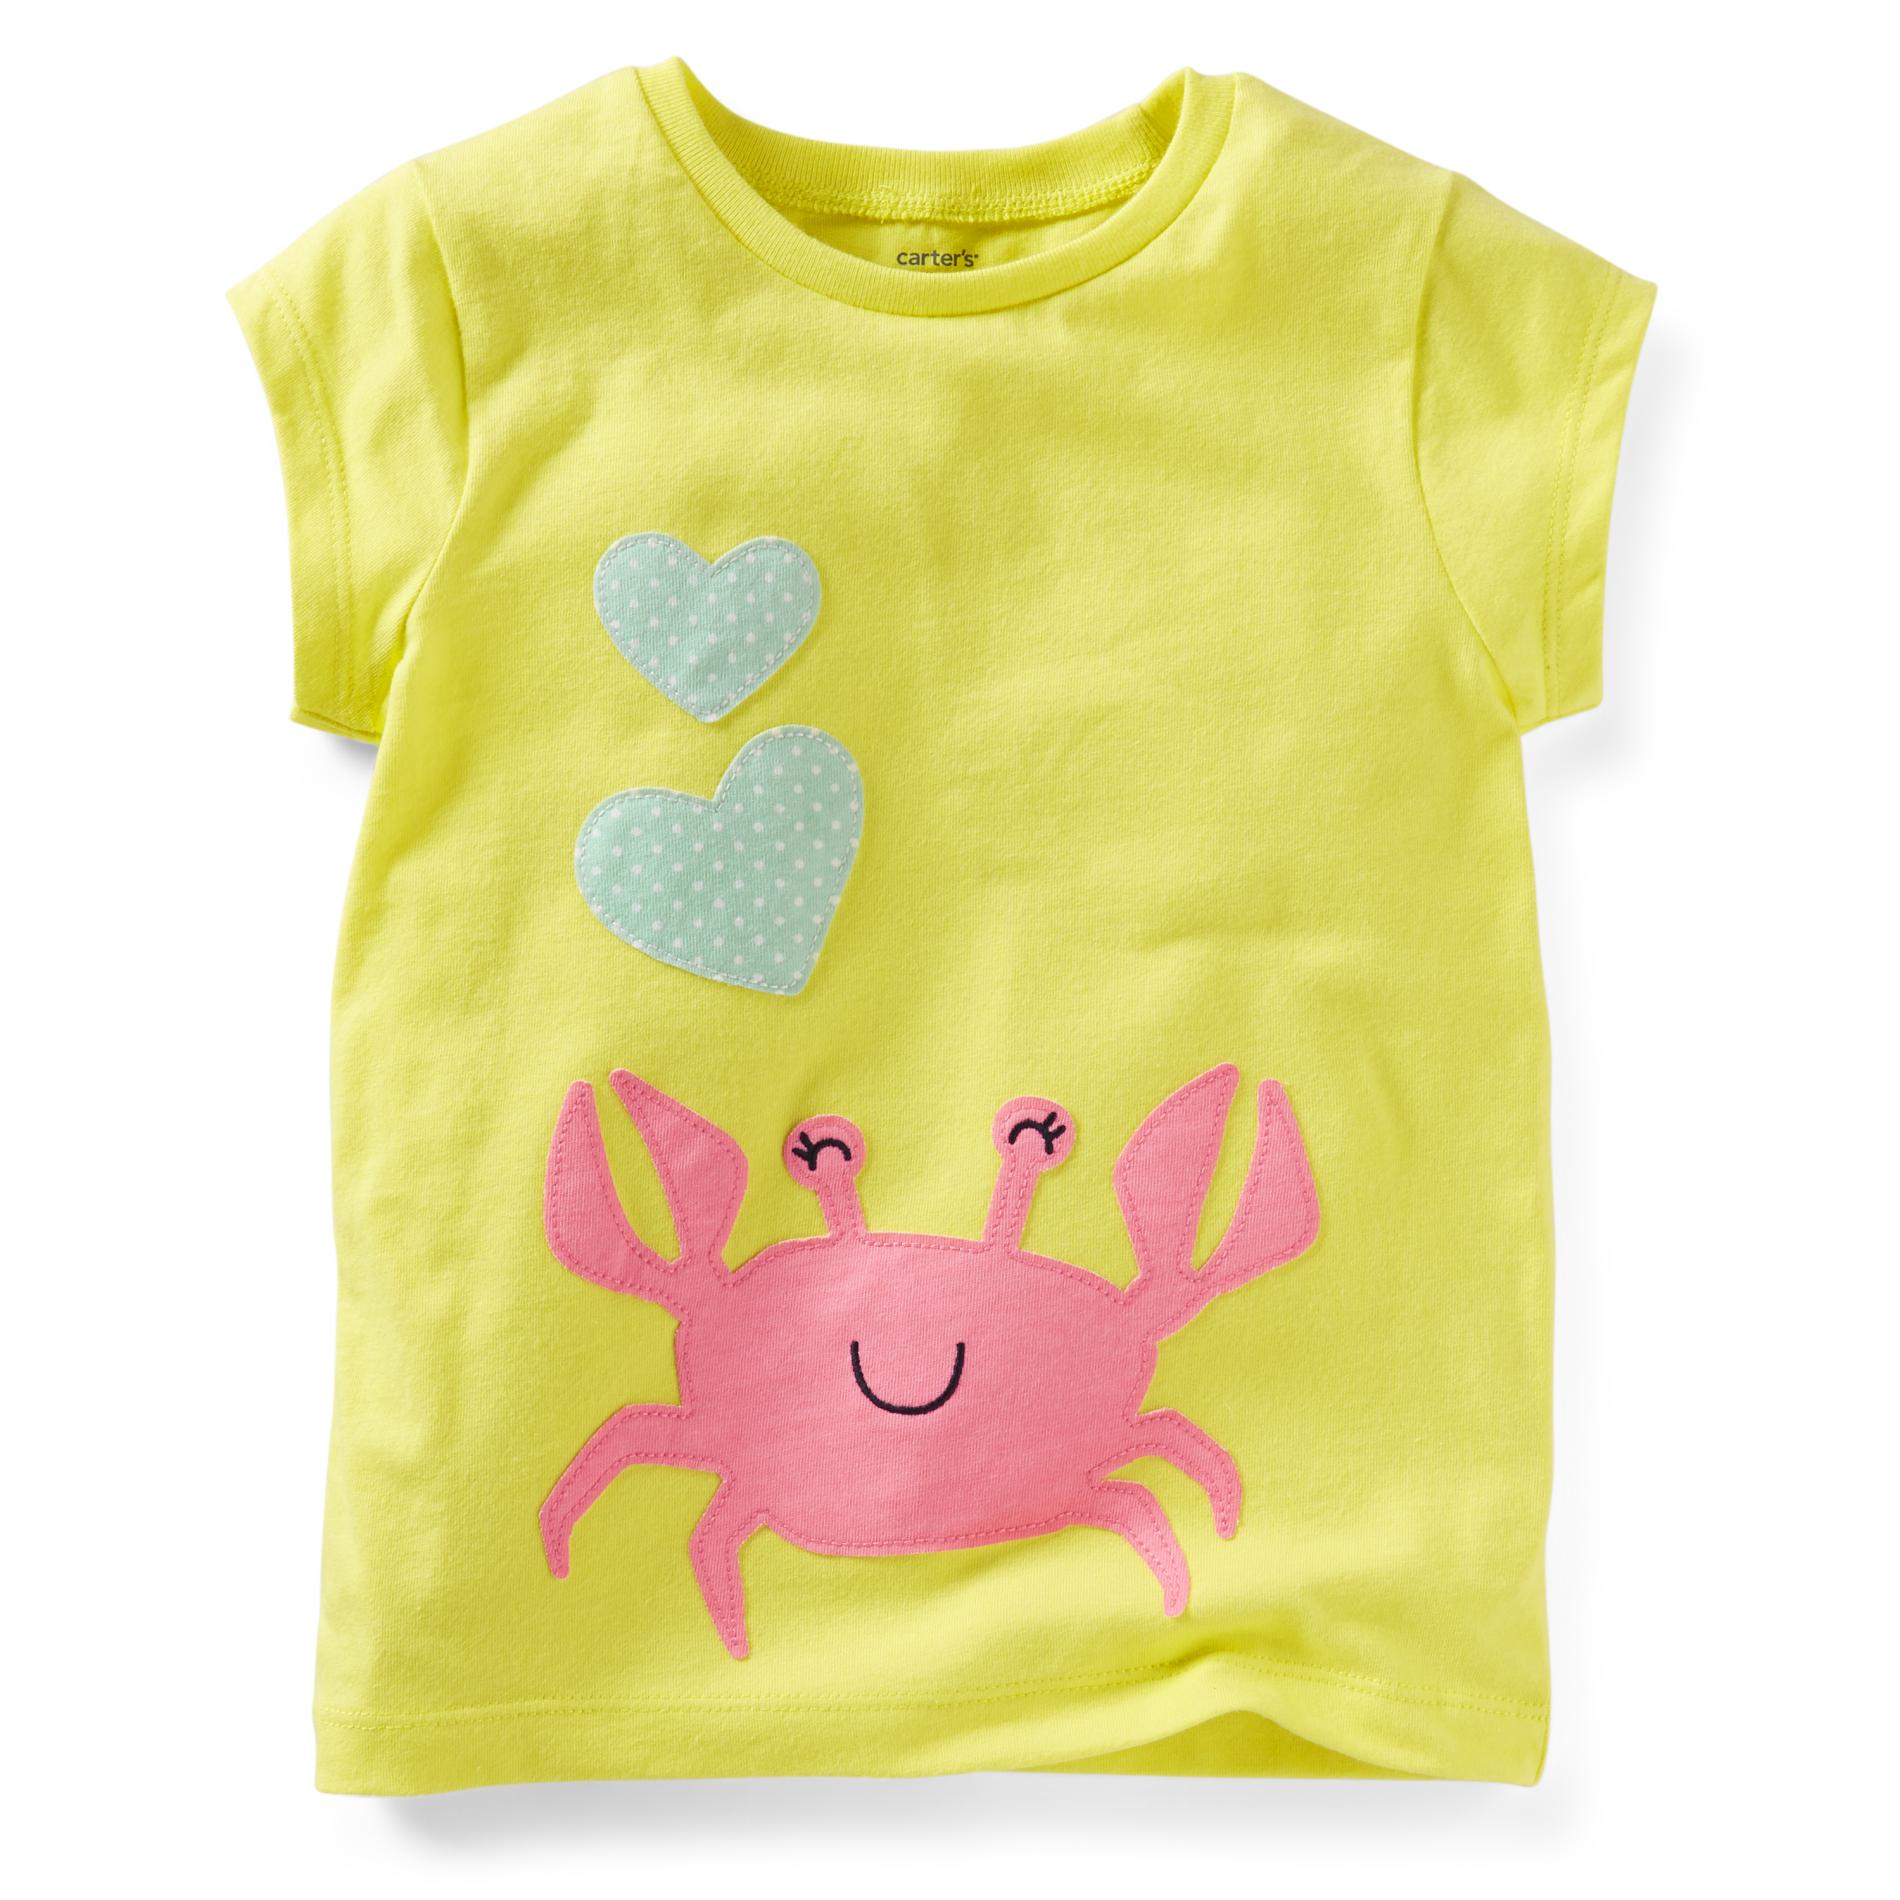 Carter's Toddler Girl's T-Shirt - Crab